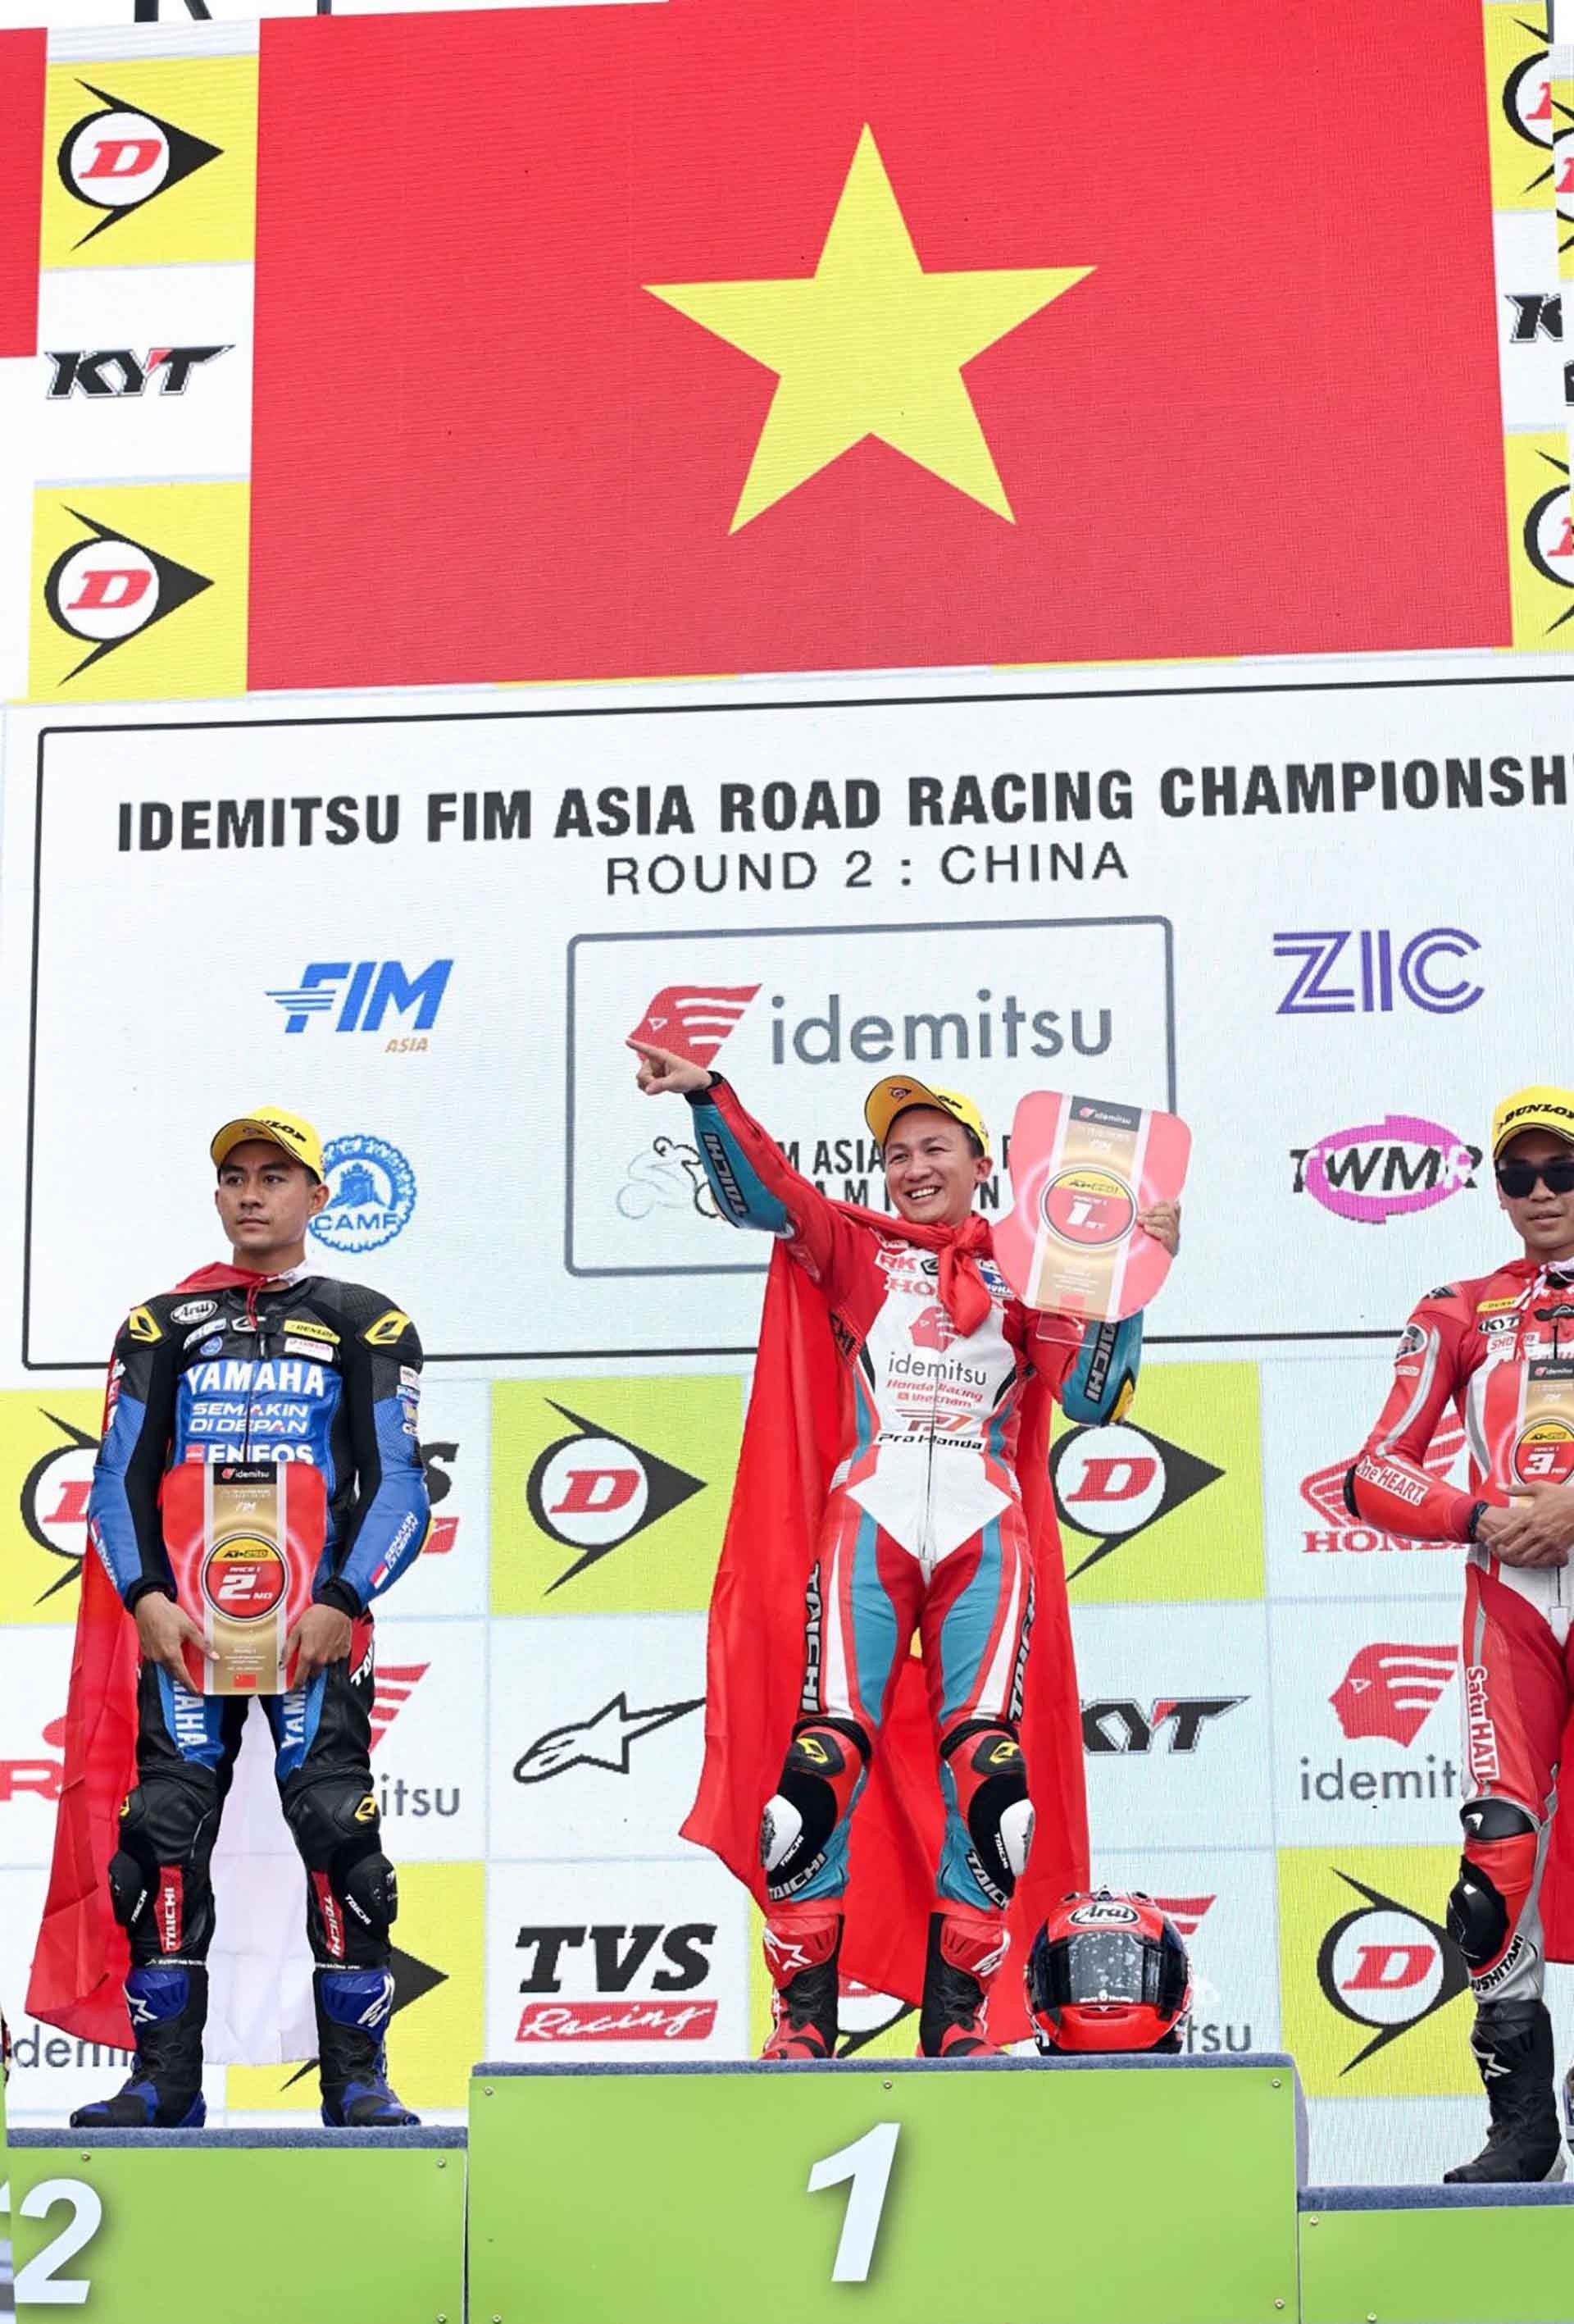 Tay đua Cao Việt Nam về Nhất tại giải vô địch đua moto châu Á tại Châu Hải, Trung Quốc